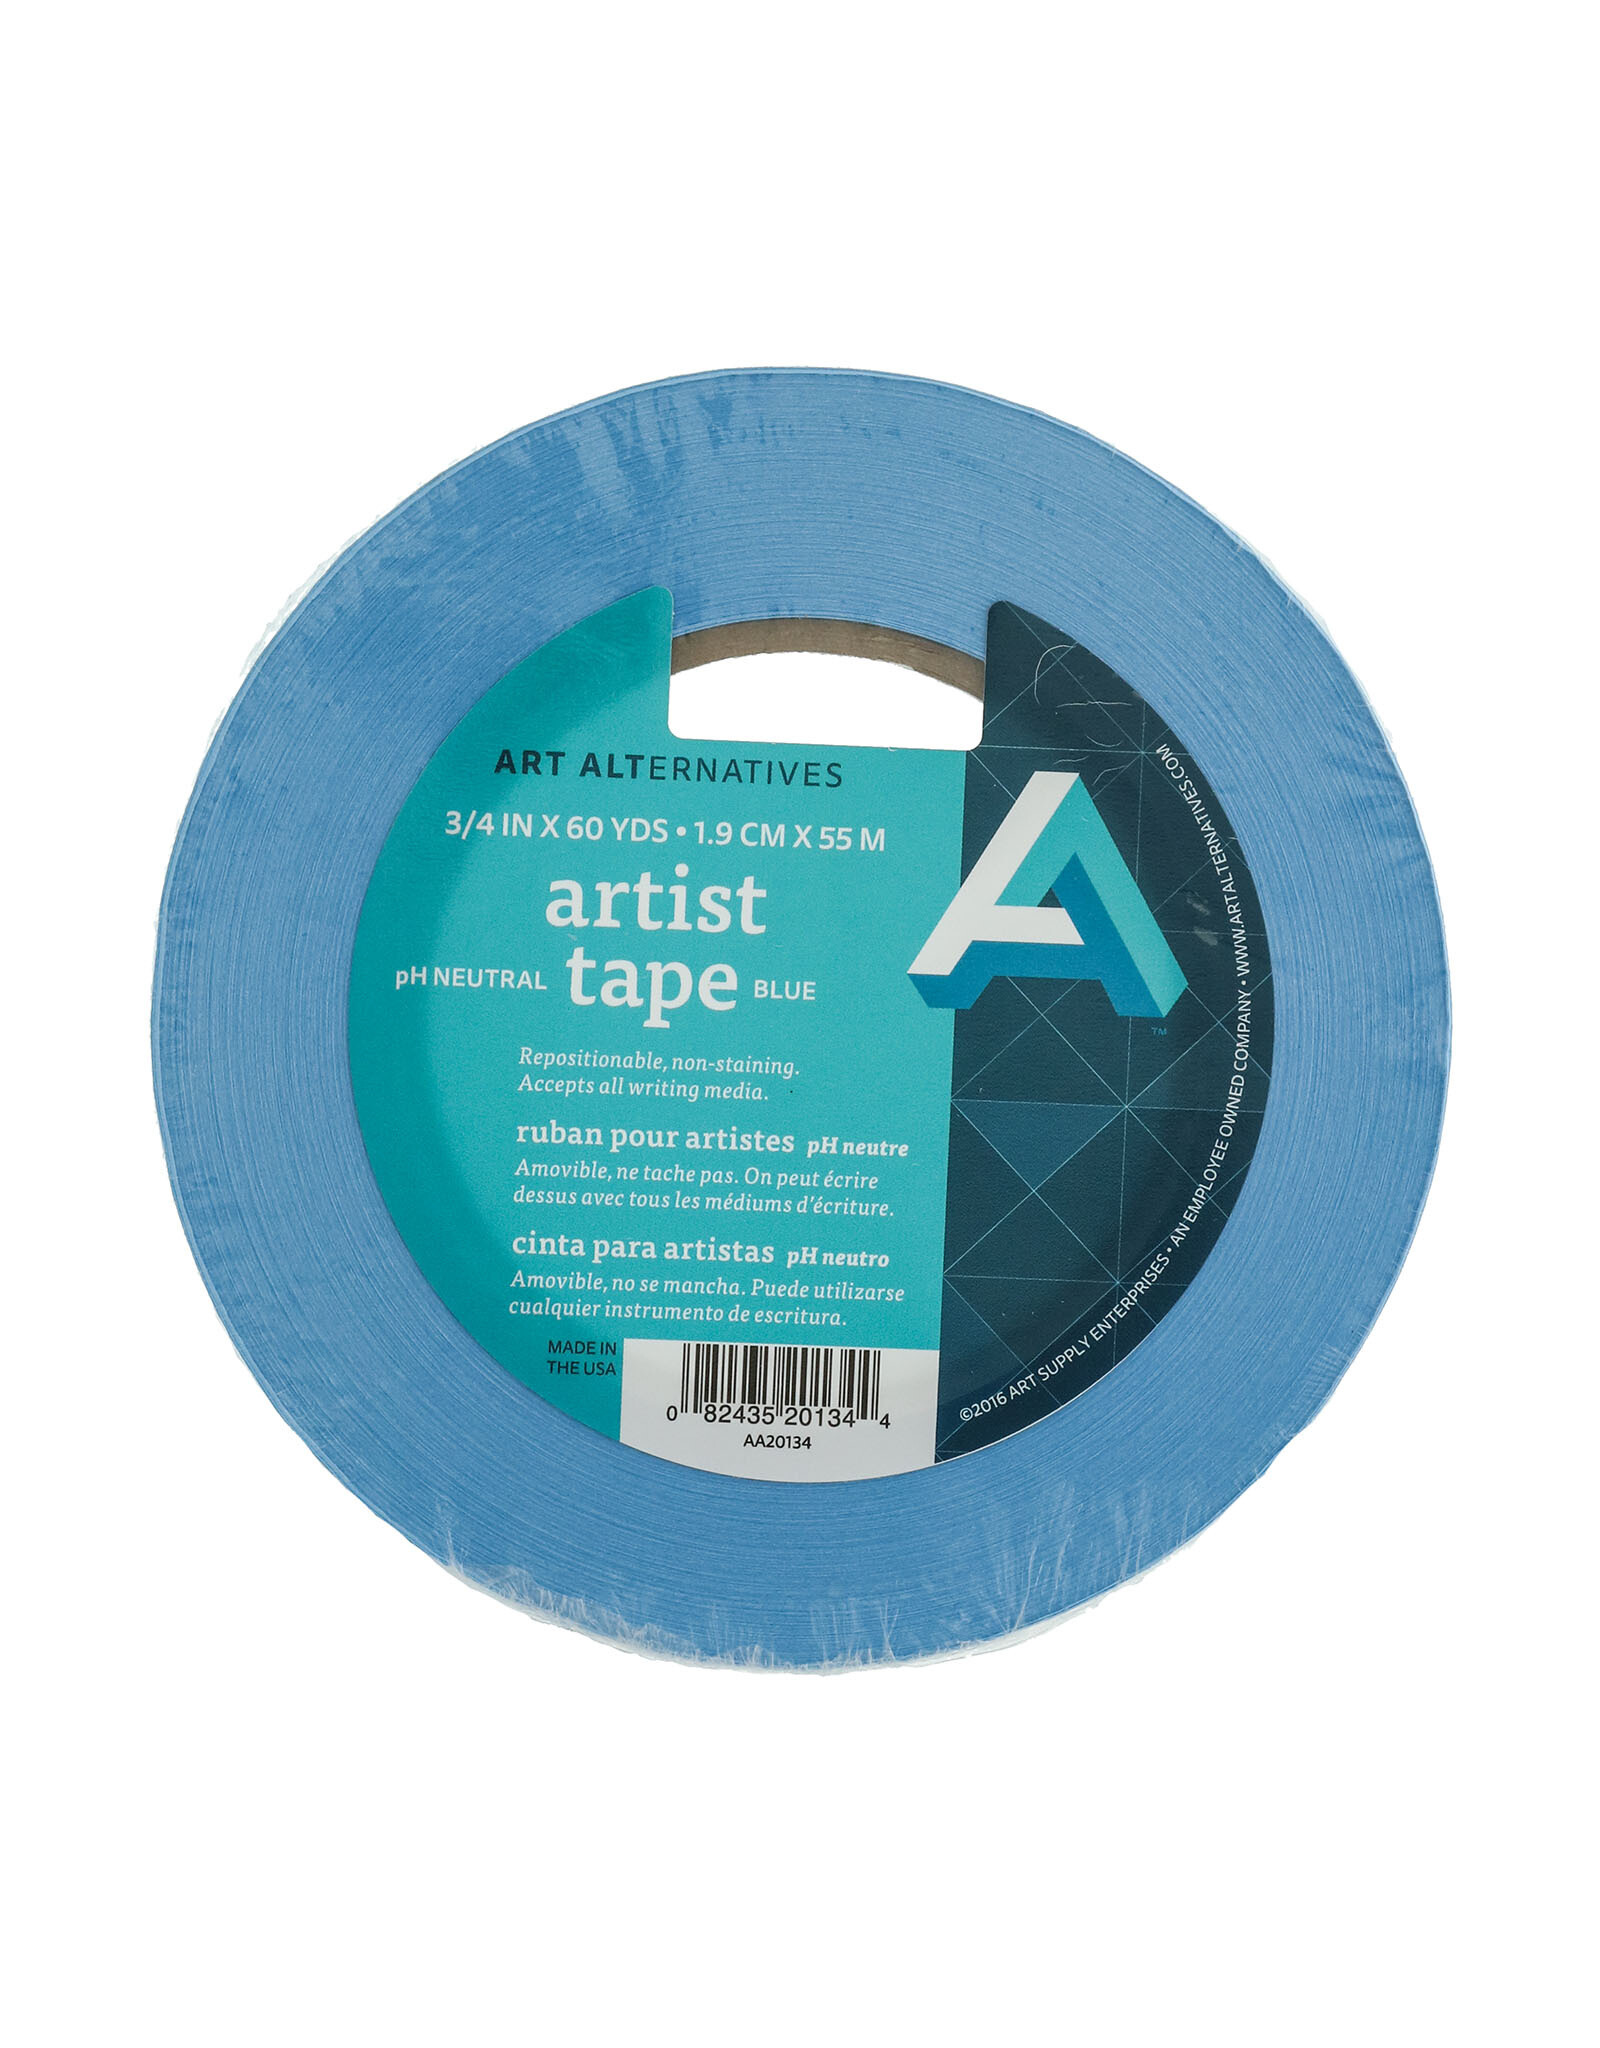 Art Alternatives Art Alternatives Artist Tape Blue ¾'' x 60yds